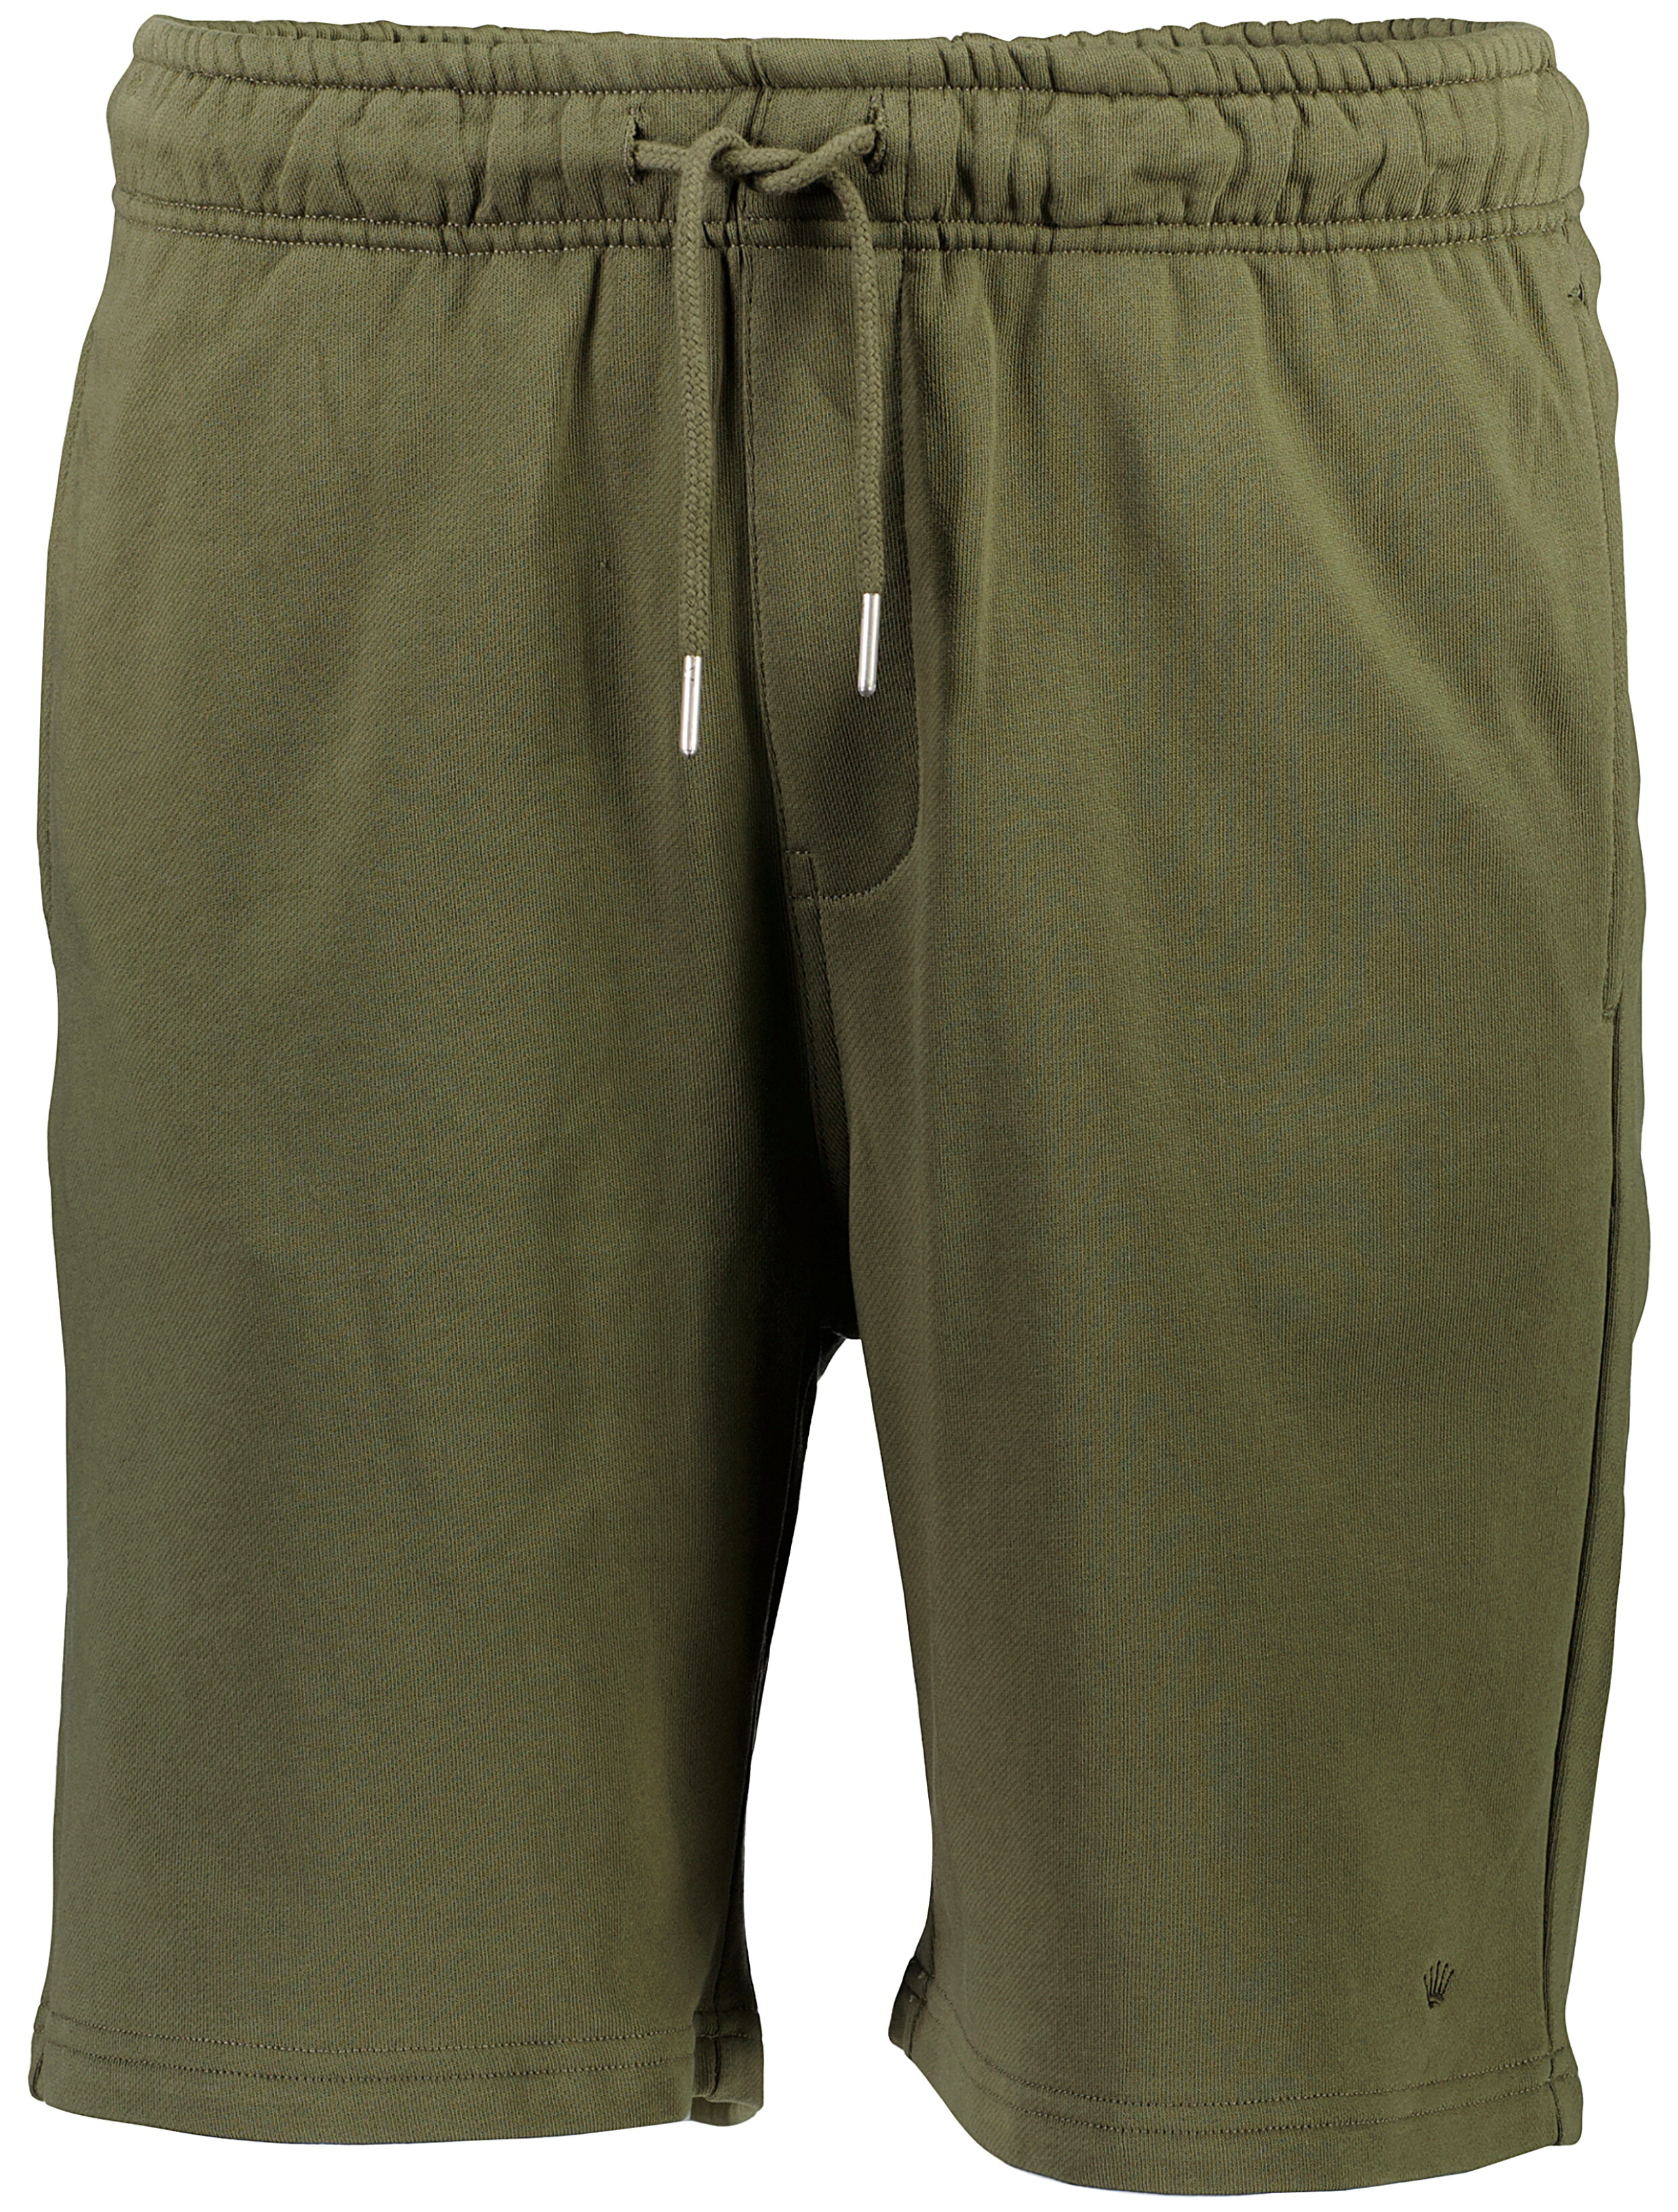 Junk de Luxe Casual shorts grøn / army